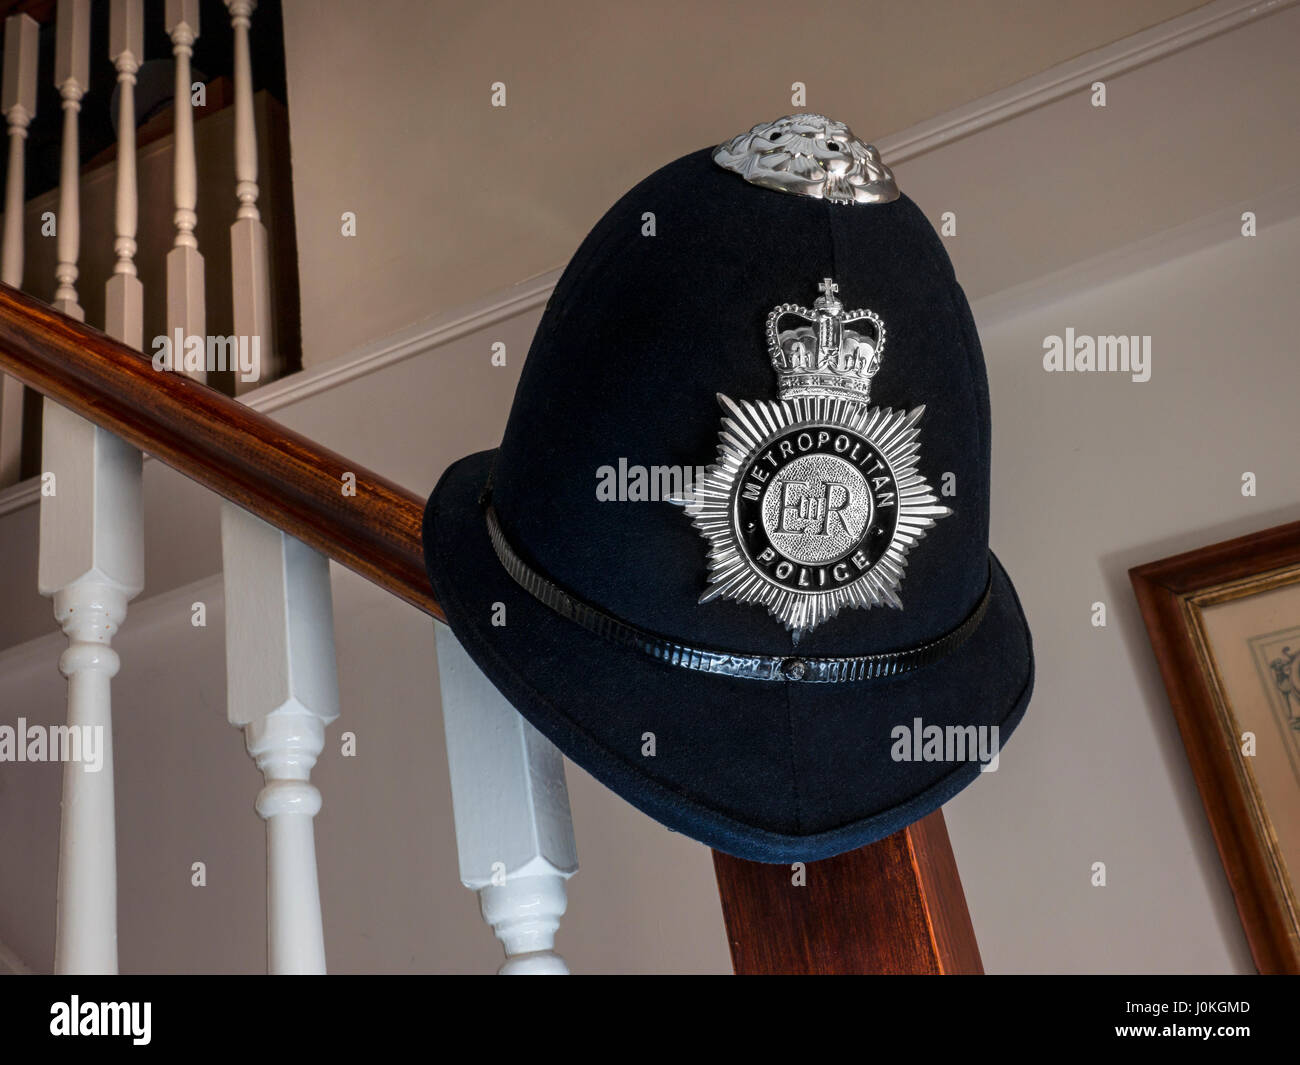 La Policía Metropolitana de Londres el casco y el monograma, en barandilla de escaleras internas en 'fin de día/entrevista' inicio situación viviente Foto de stock